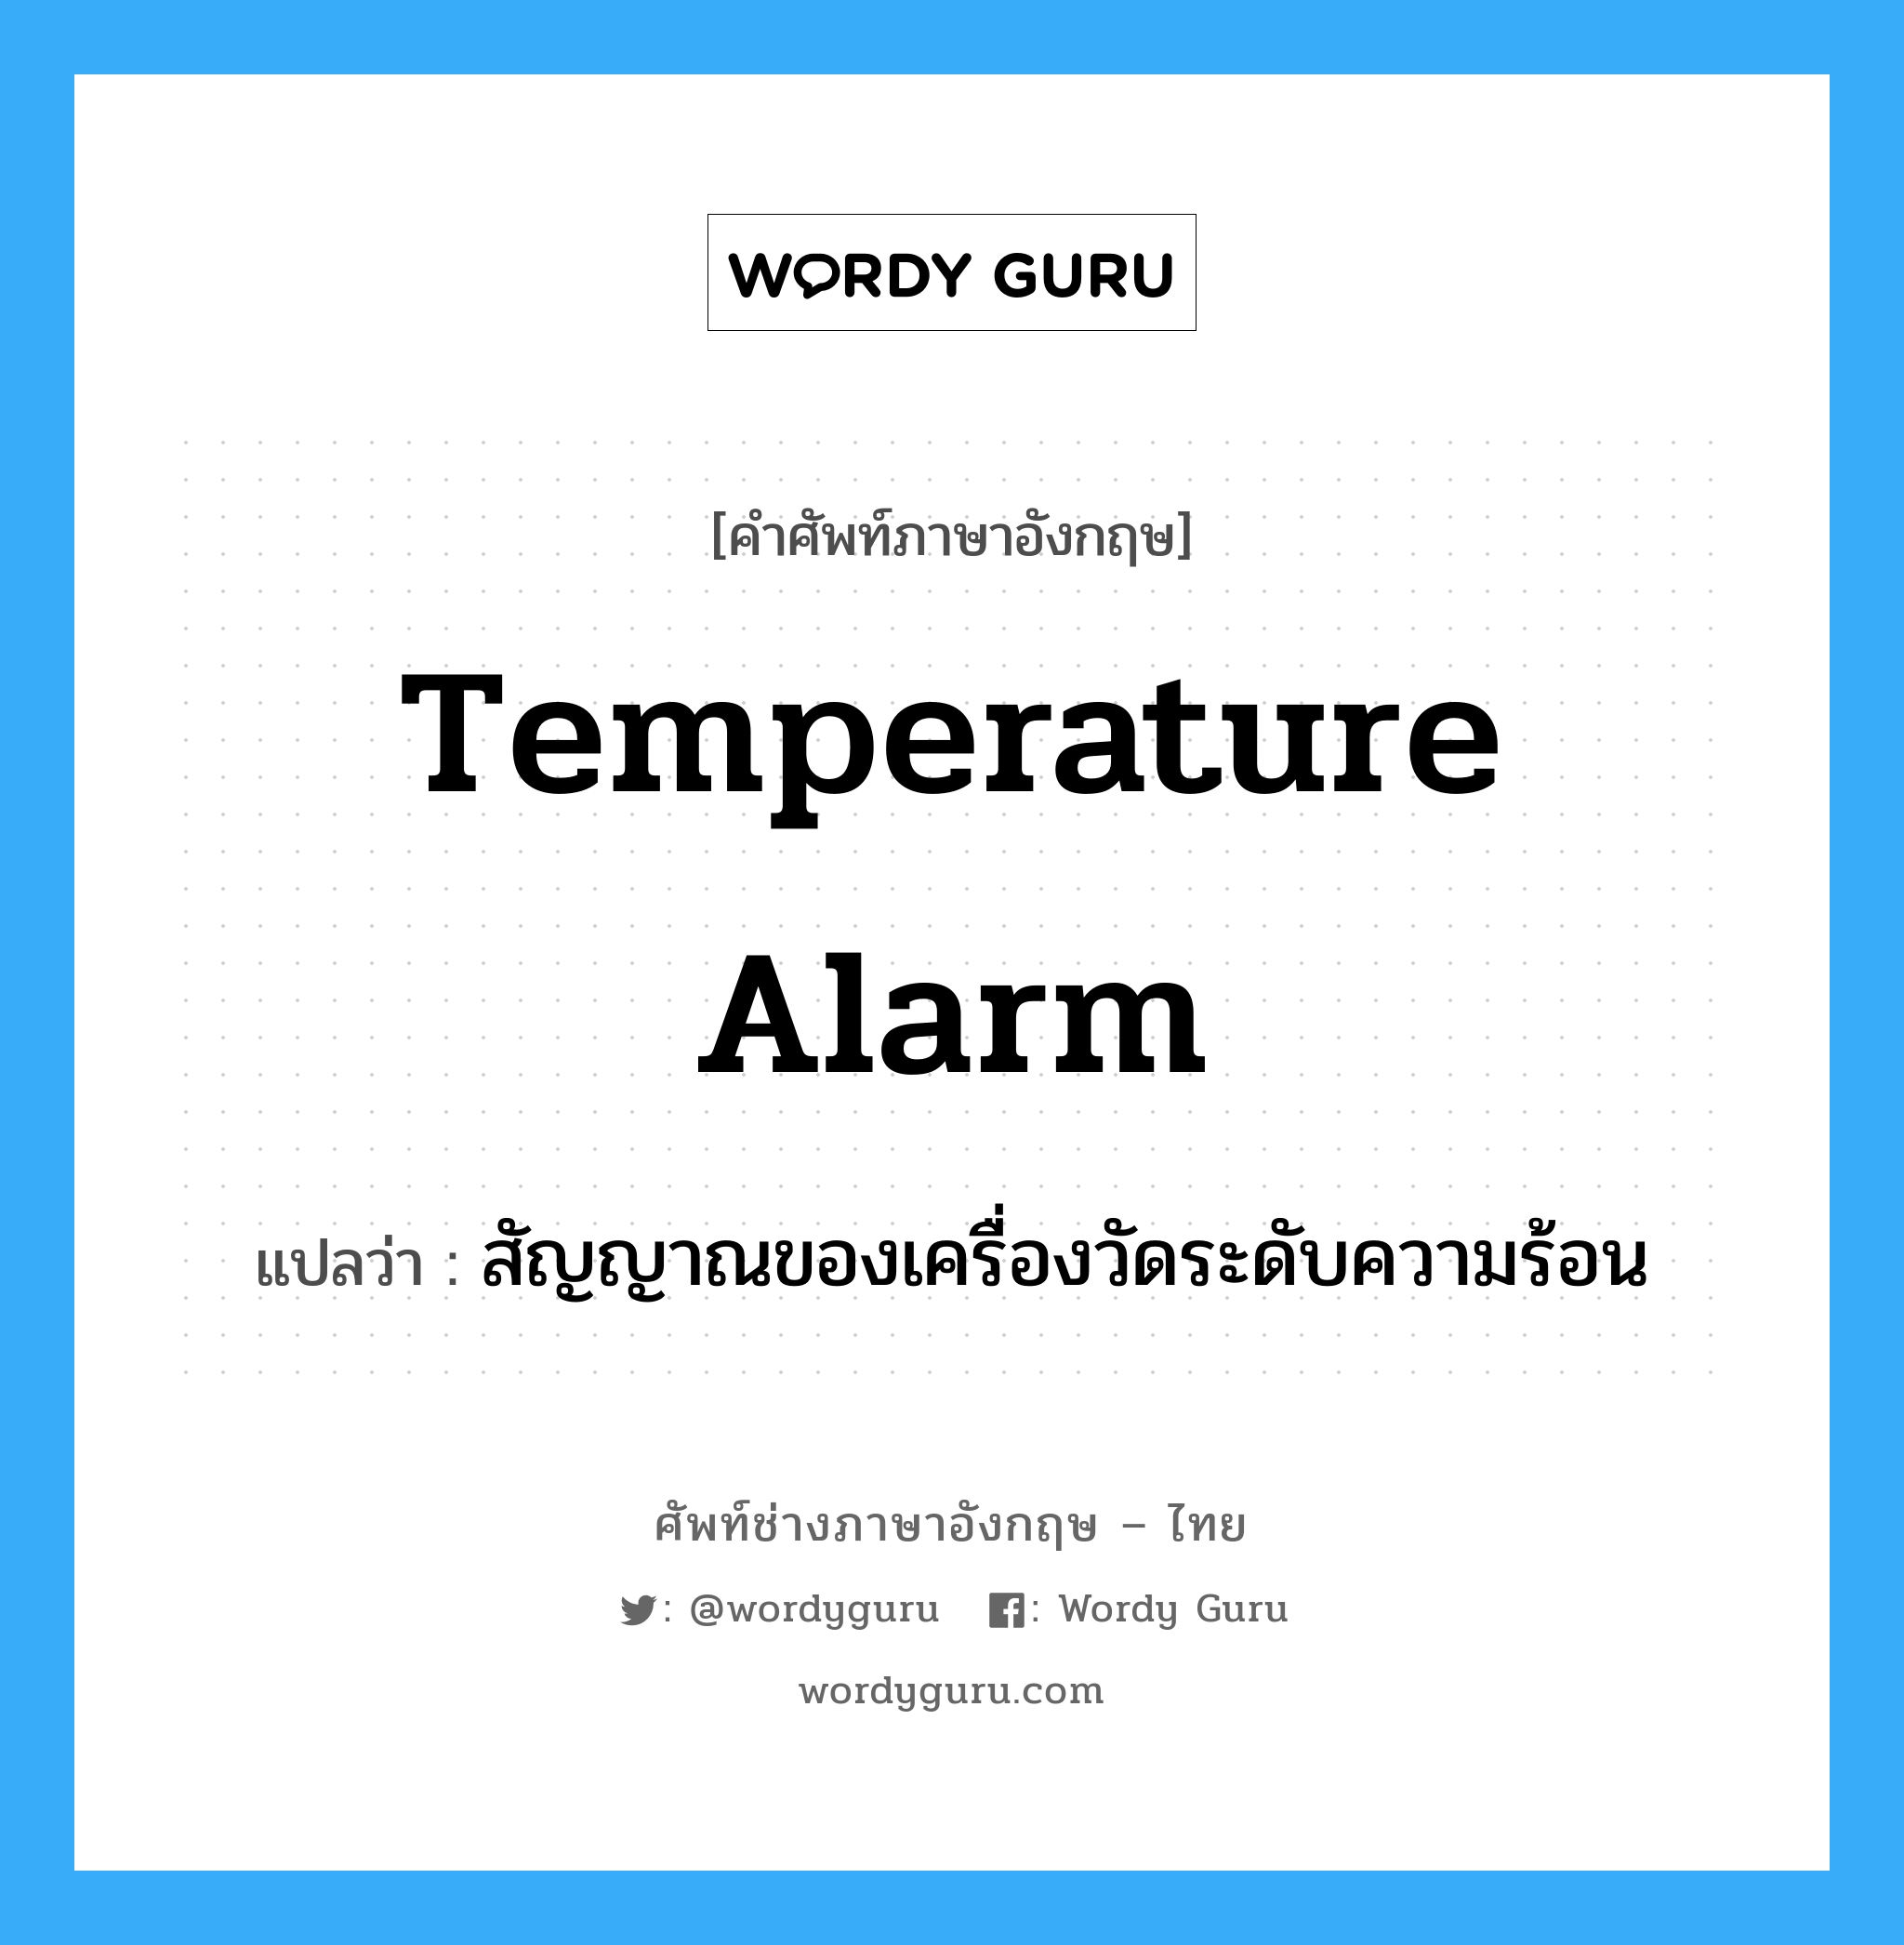 สัญญาณของเครื่องวัดระดับความร้อน ภาษาอังกฤษ?, คำศัพท์ช่างภาษาอังกฤษ - ไทย สัญญาณของเครื่องวัดระดับความร้อน คำศัพท์ภาษาอังกฤษ สัญญาณของเครื่องวัดระดับความร้อน แปลว่า temperature alarm